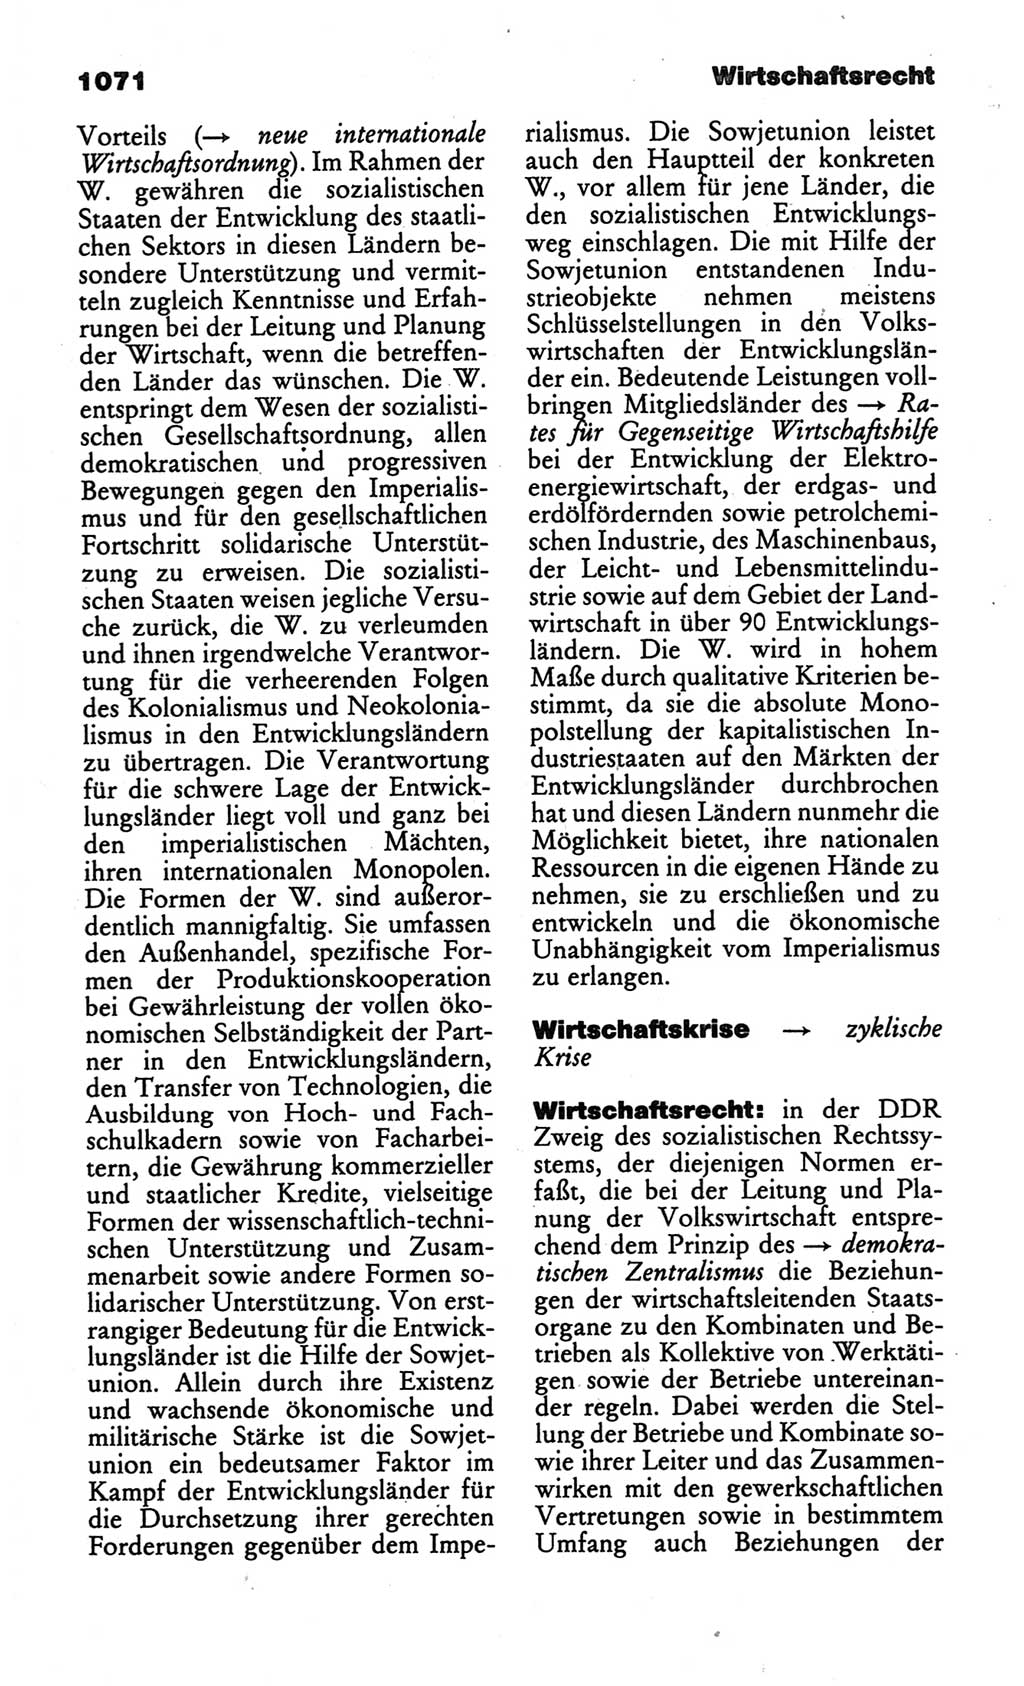 Kleines politisches Wörterbuch [Deutsche Demokratische Republik (DDR)] 1986, Seite 1071 (Kl. pol. Wb. DDR 1986, S. 1071)